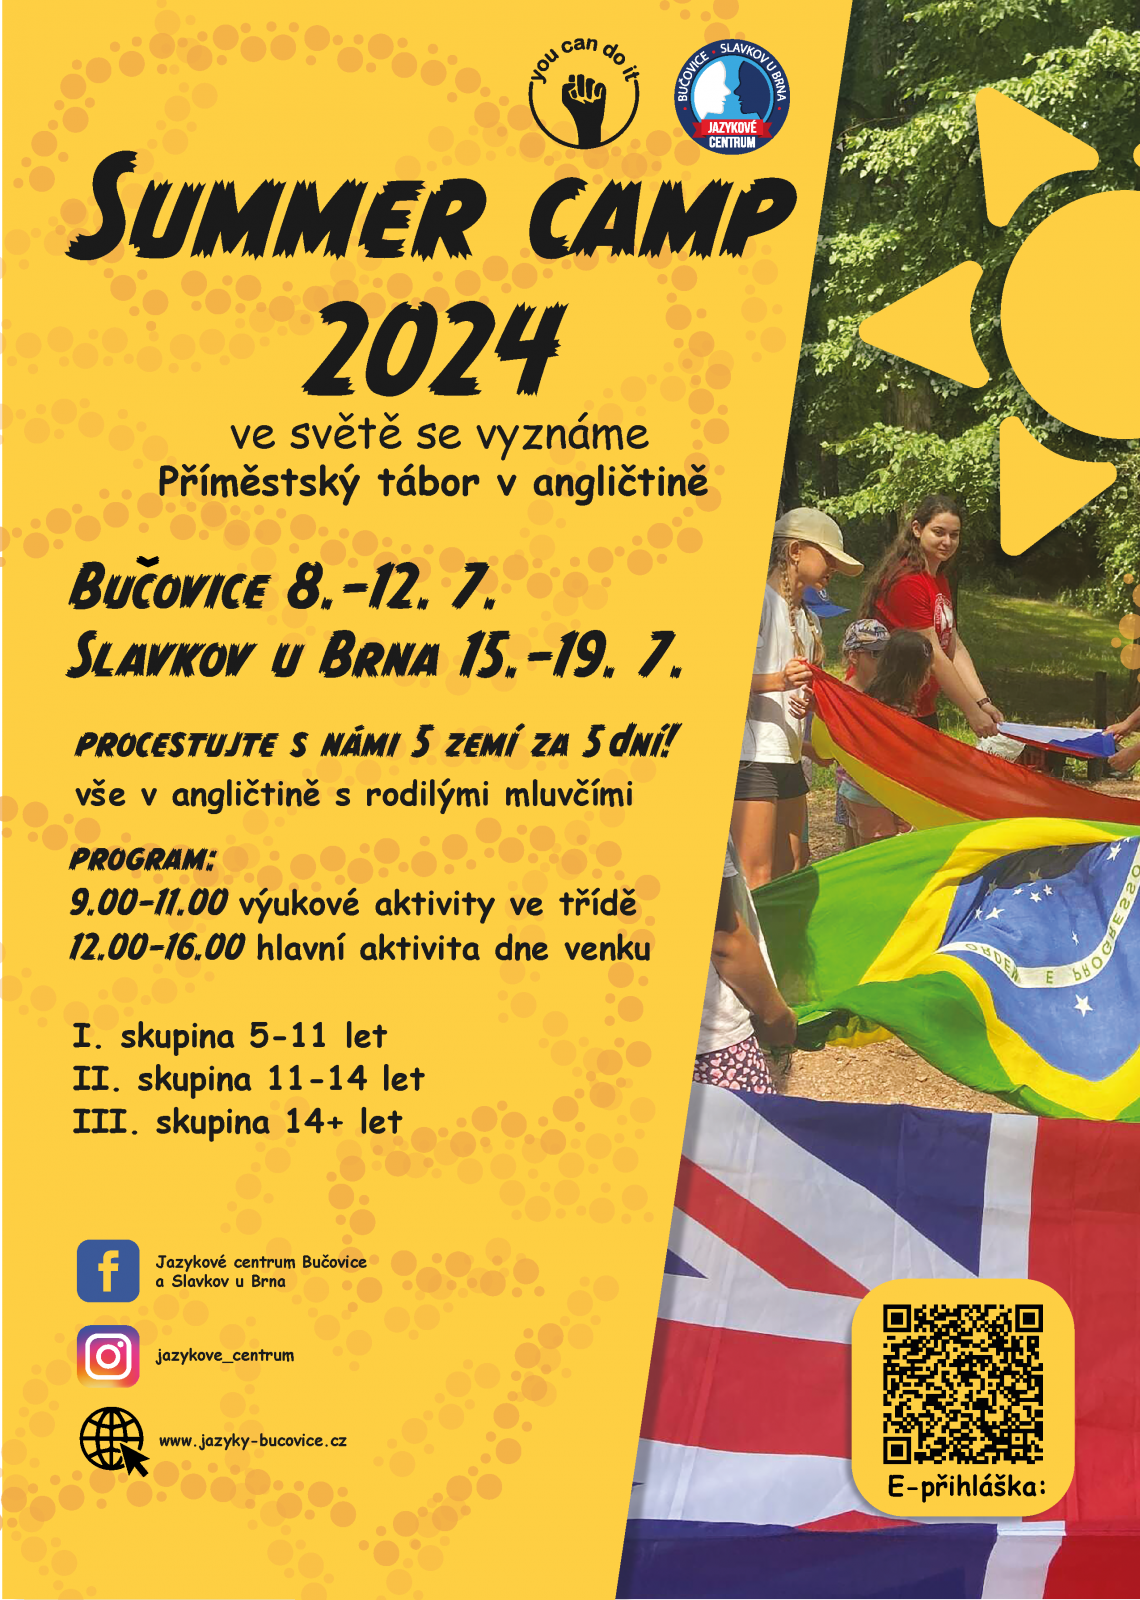 SUMMER CAMP 2024  - výukový program v angličtině